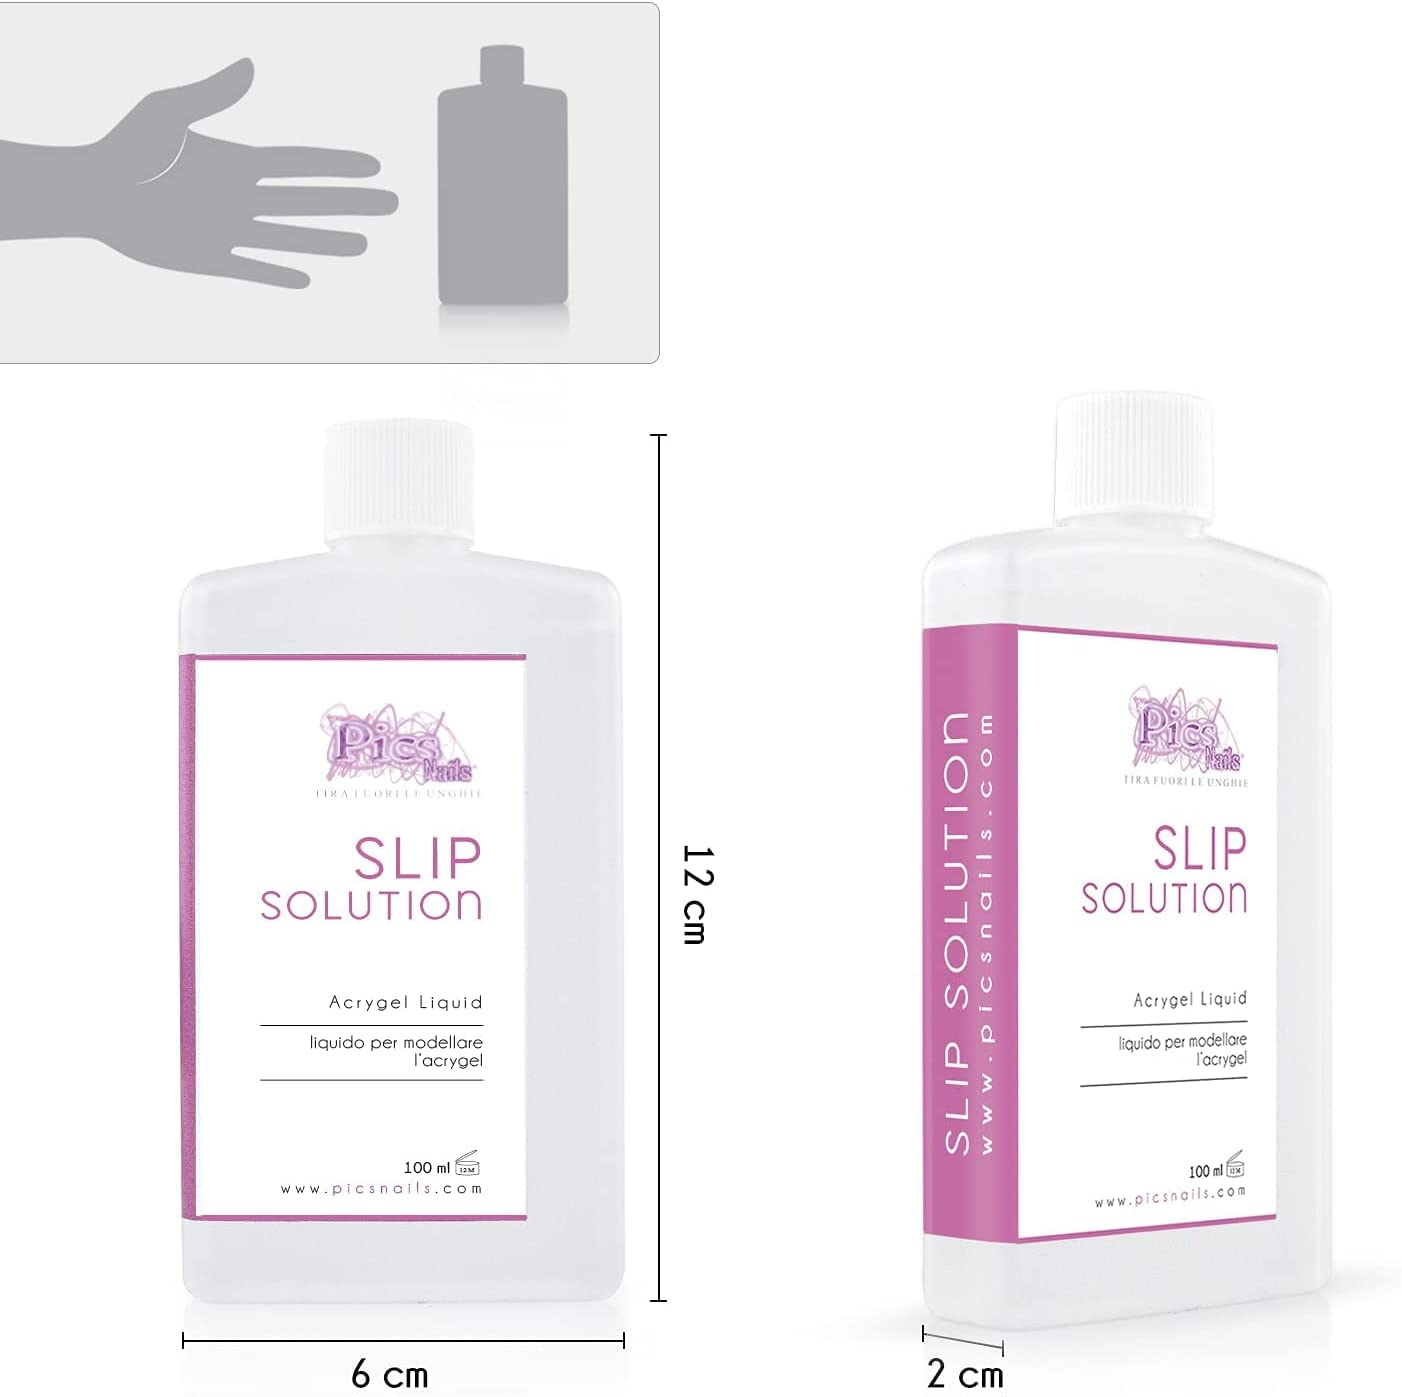 Slip Solution 100 Ml Liquido Professionale per Unghie - Liquido Modellante per Acrygel Alta Qualità, Ammorbidisce E Facilita La Lavorazione Del Gel Ibrido per Unghie